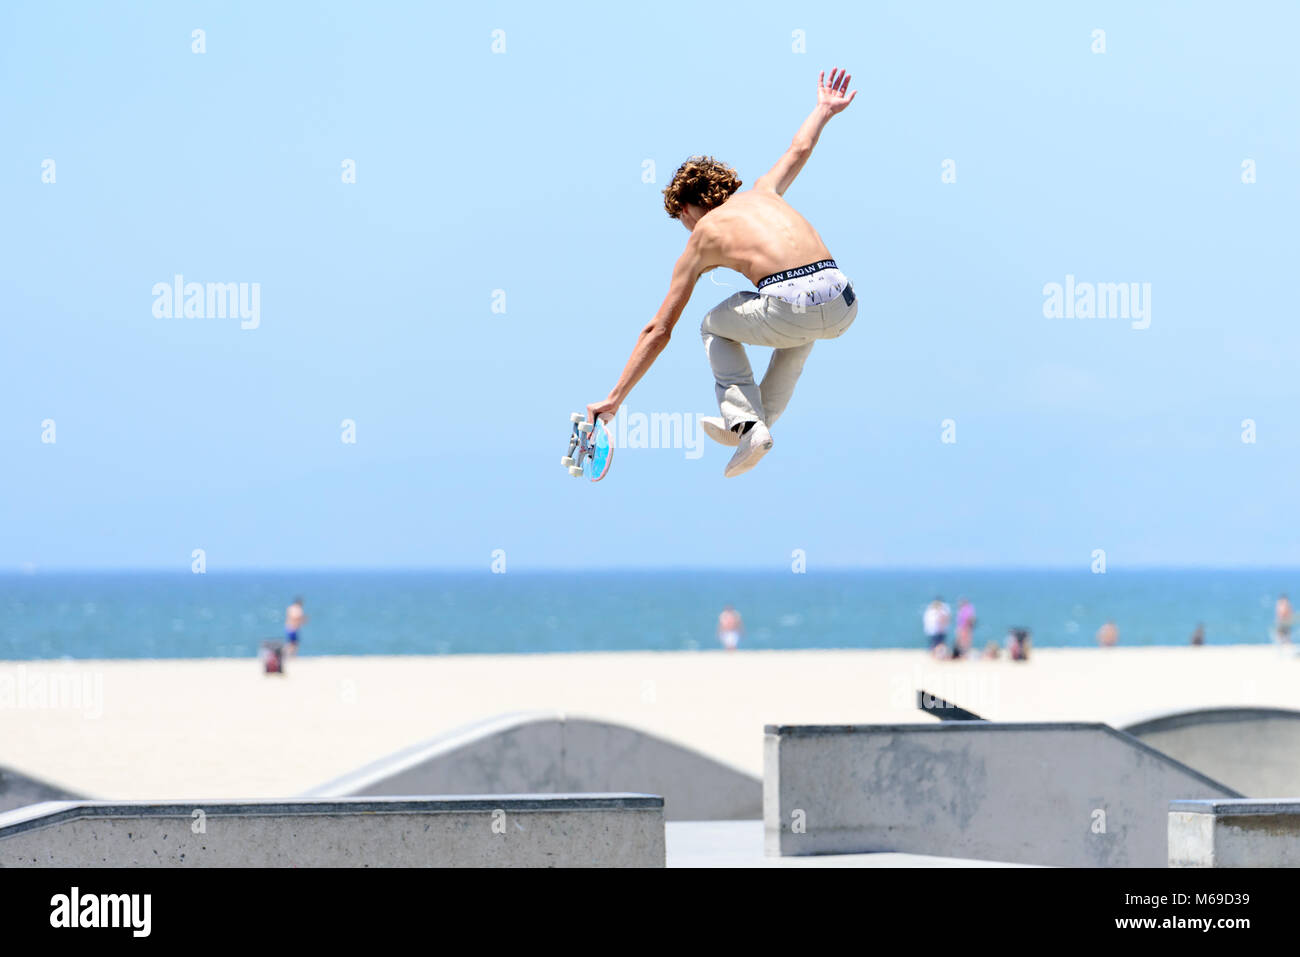 Jeune skateur professionnel au skatepark sur la célèbre promenade de Venice Beach L'une des plus grande attraction touristique de la Californie. Banque D'Images